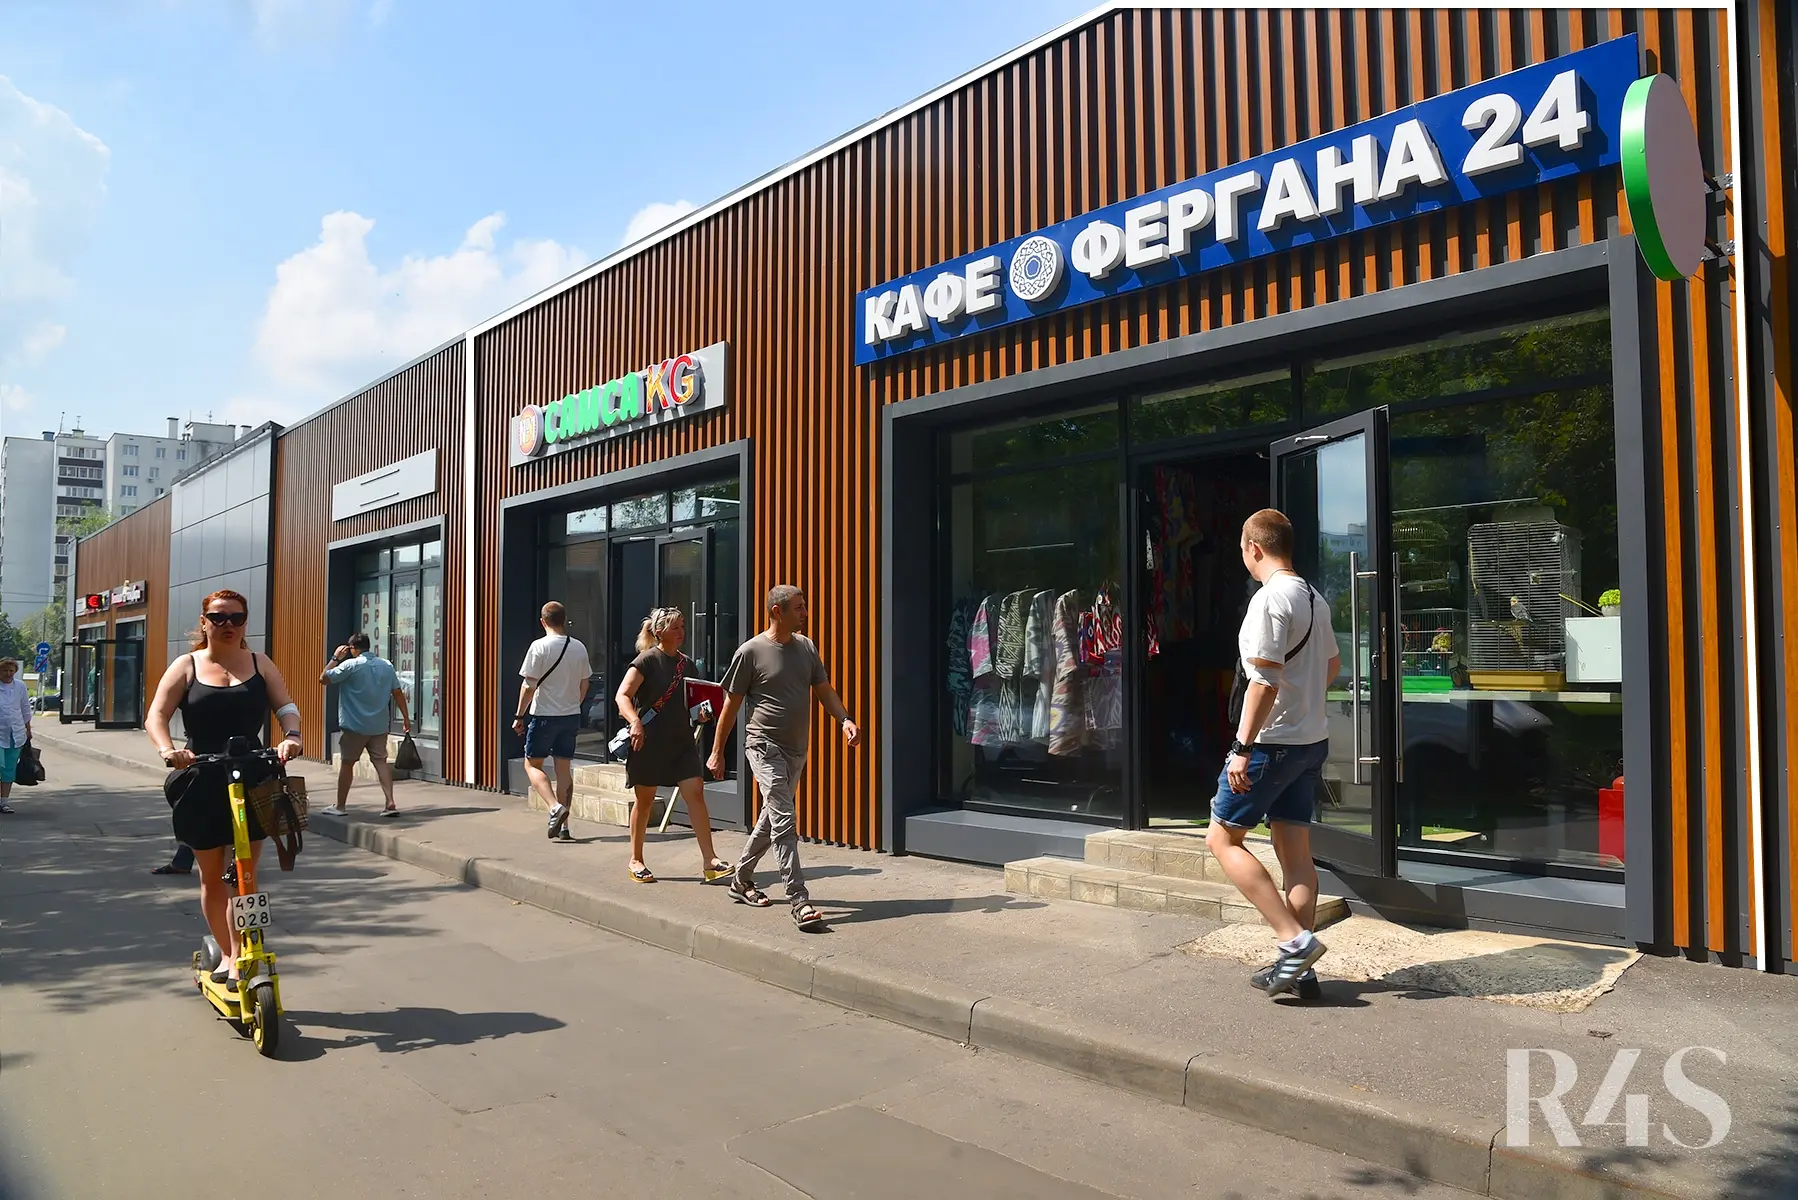 Продажа готового арендного бизнеса площадью 427.9 м2 в Москве: Краснодарская, 57к3 R4S | Realty4Sale